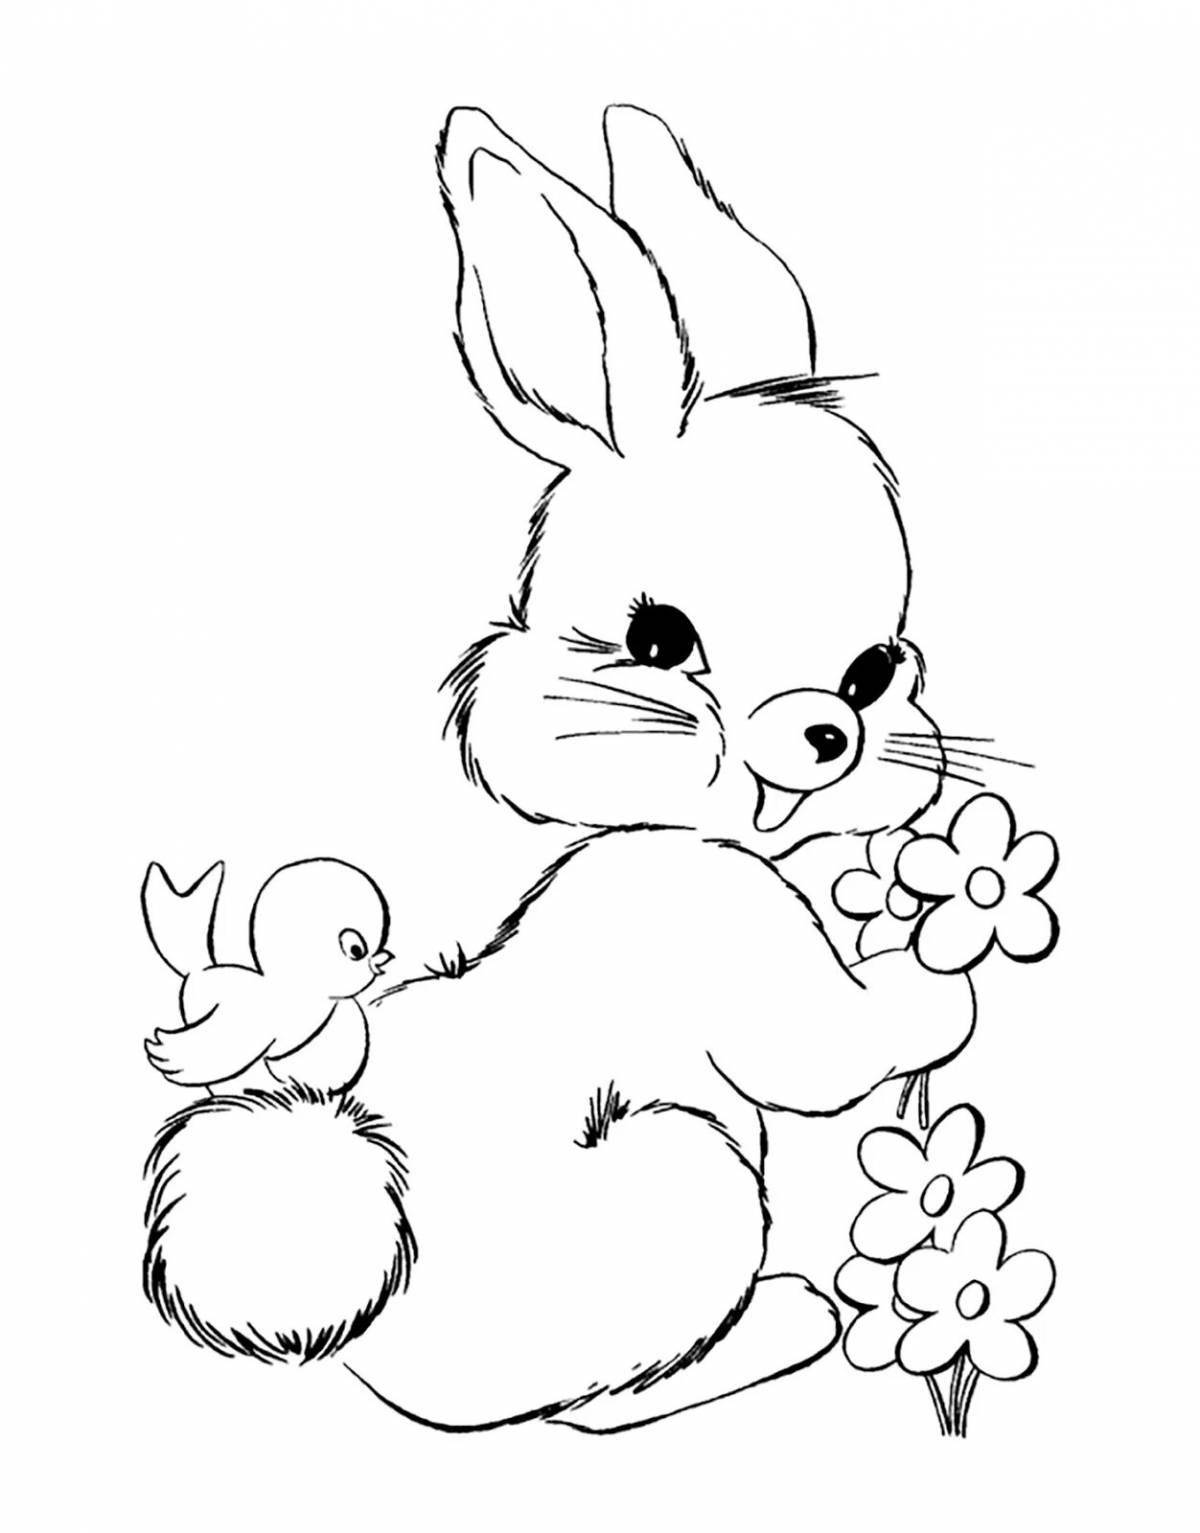 Причудливая раскраска зайца для детей